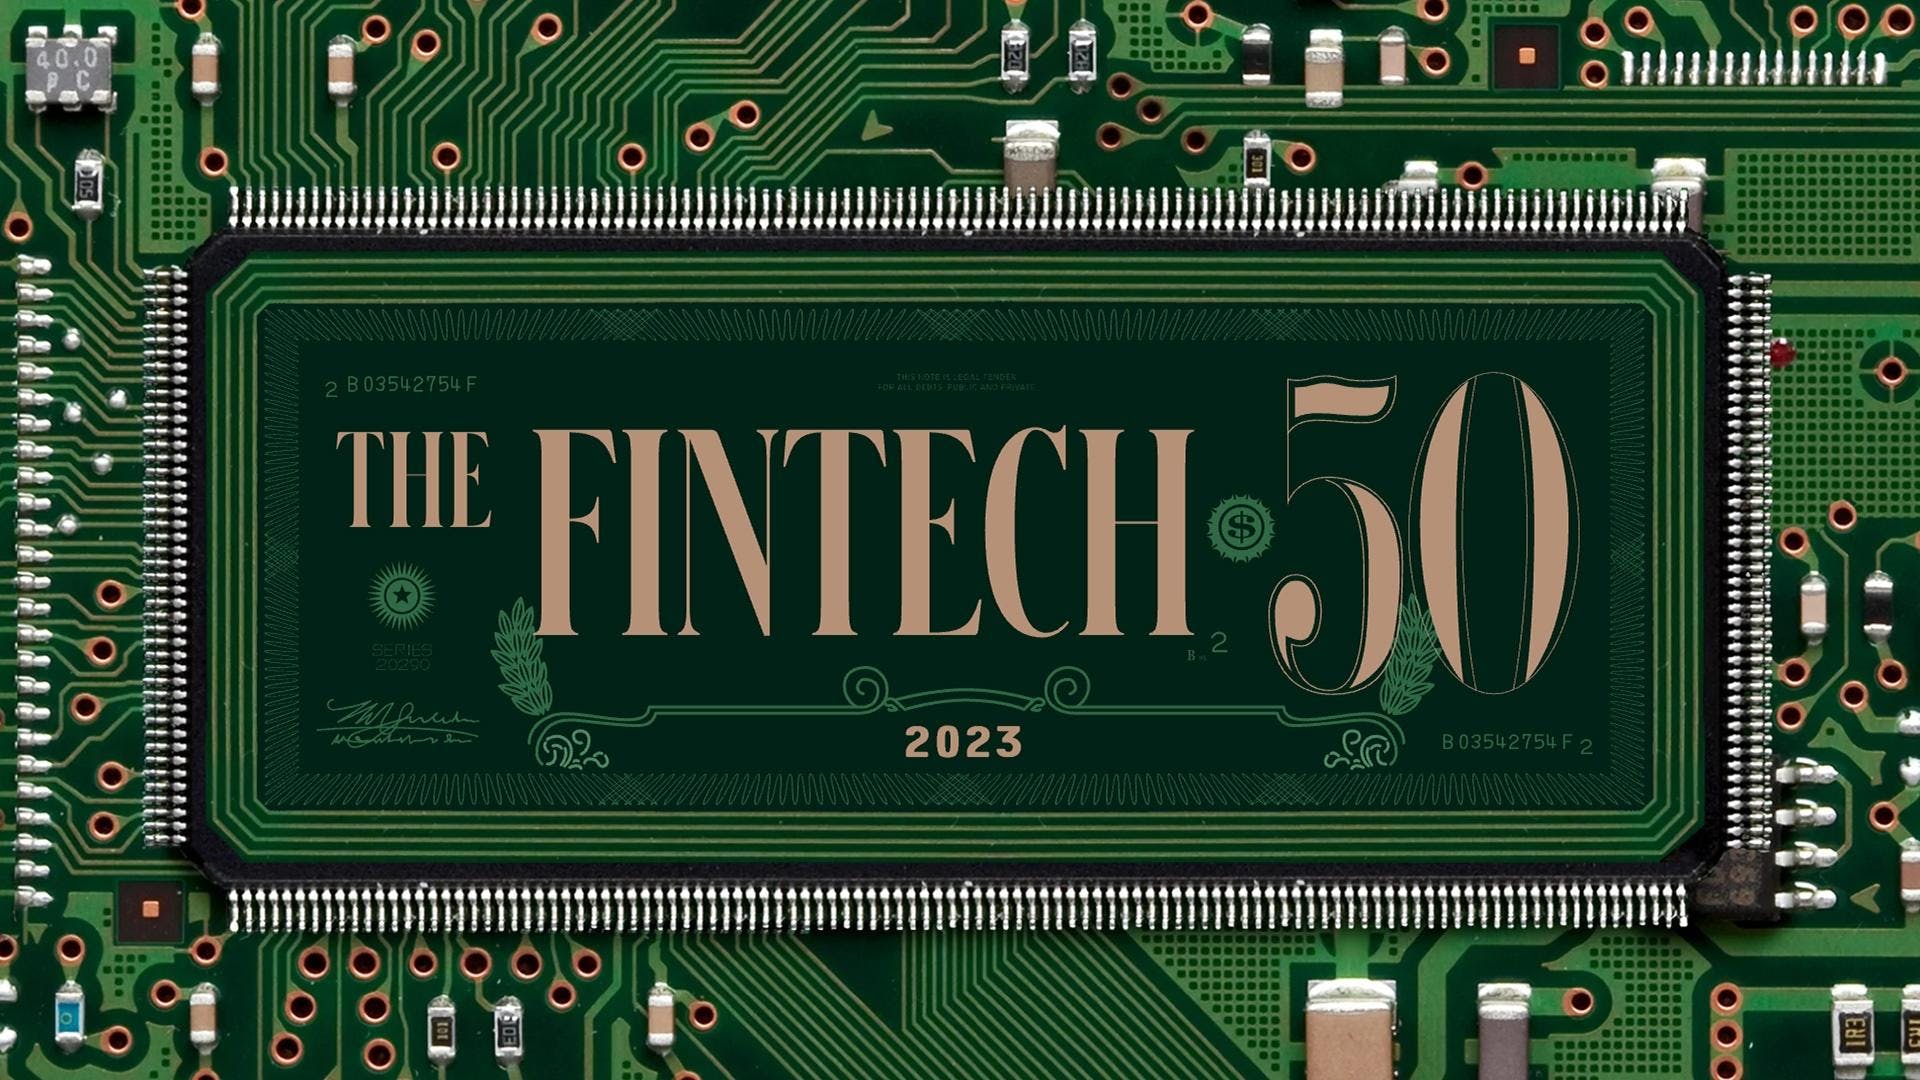 2023 Forbes Fintech 50 logo